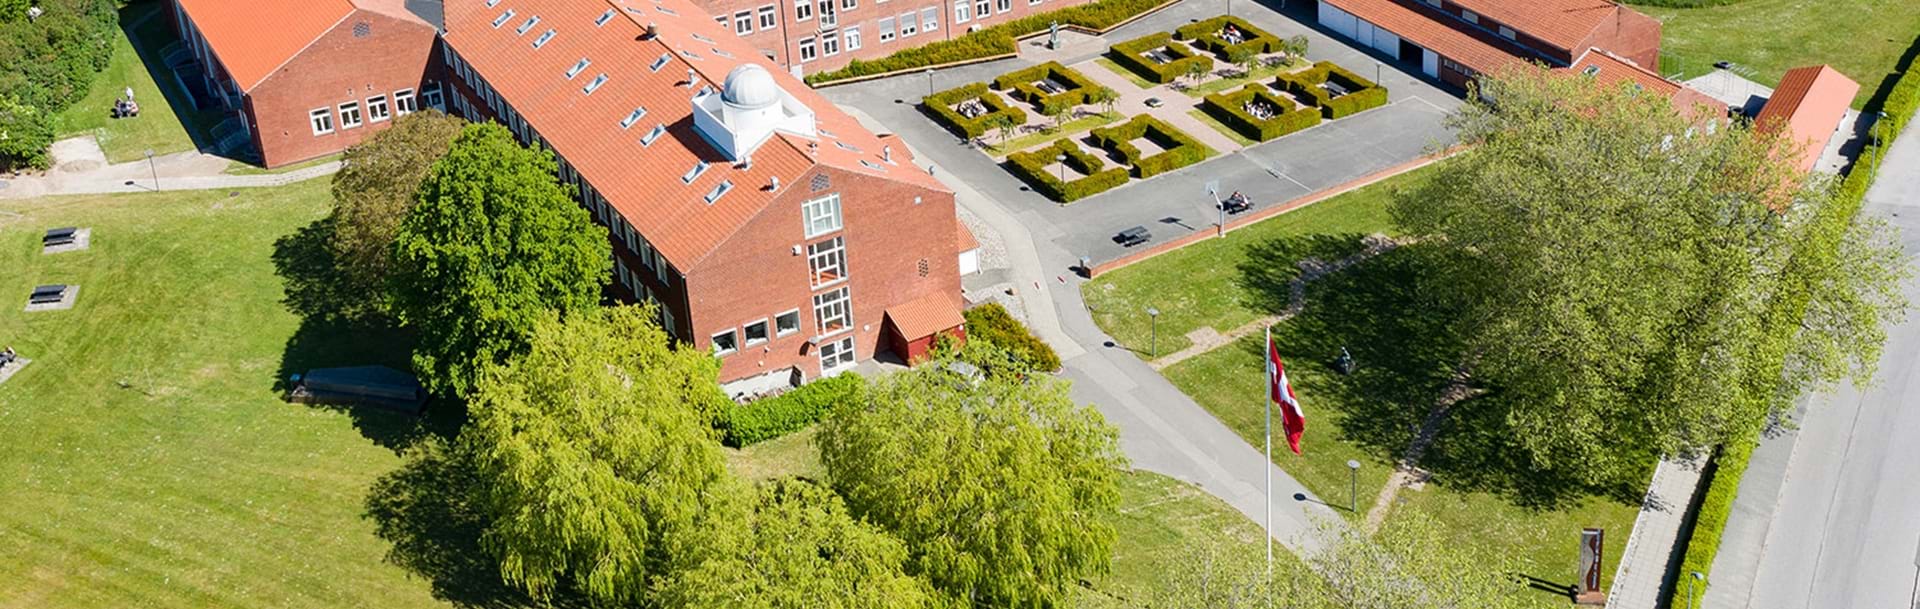 Skolen fotograferet oppe fra med drone